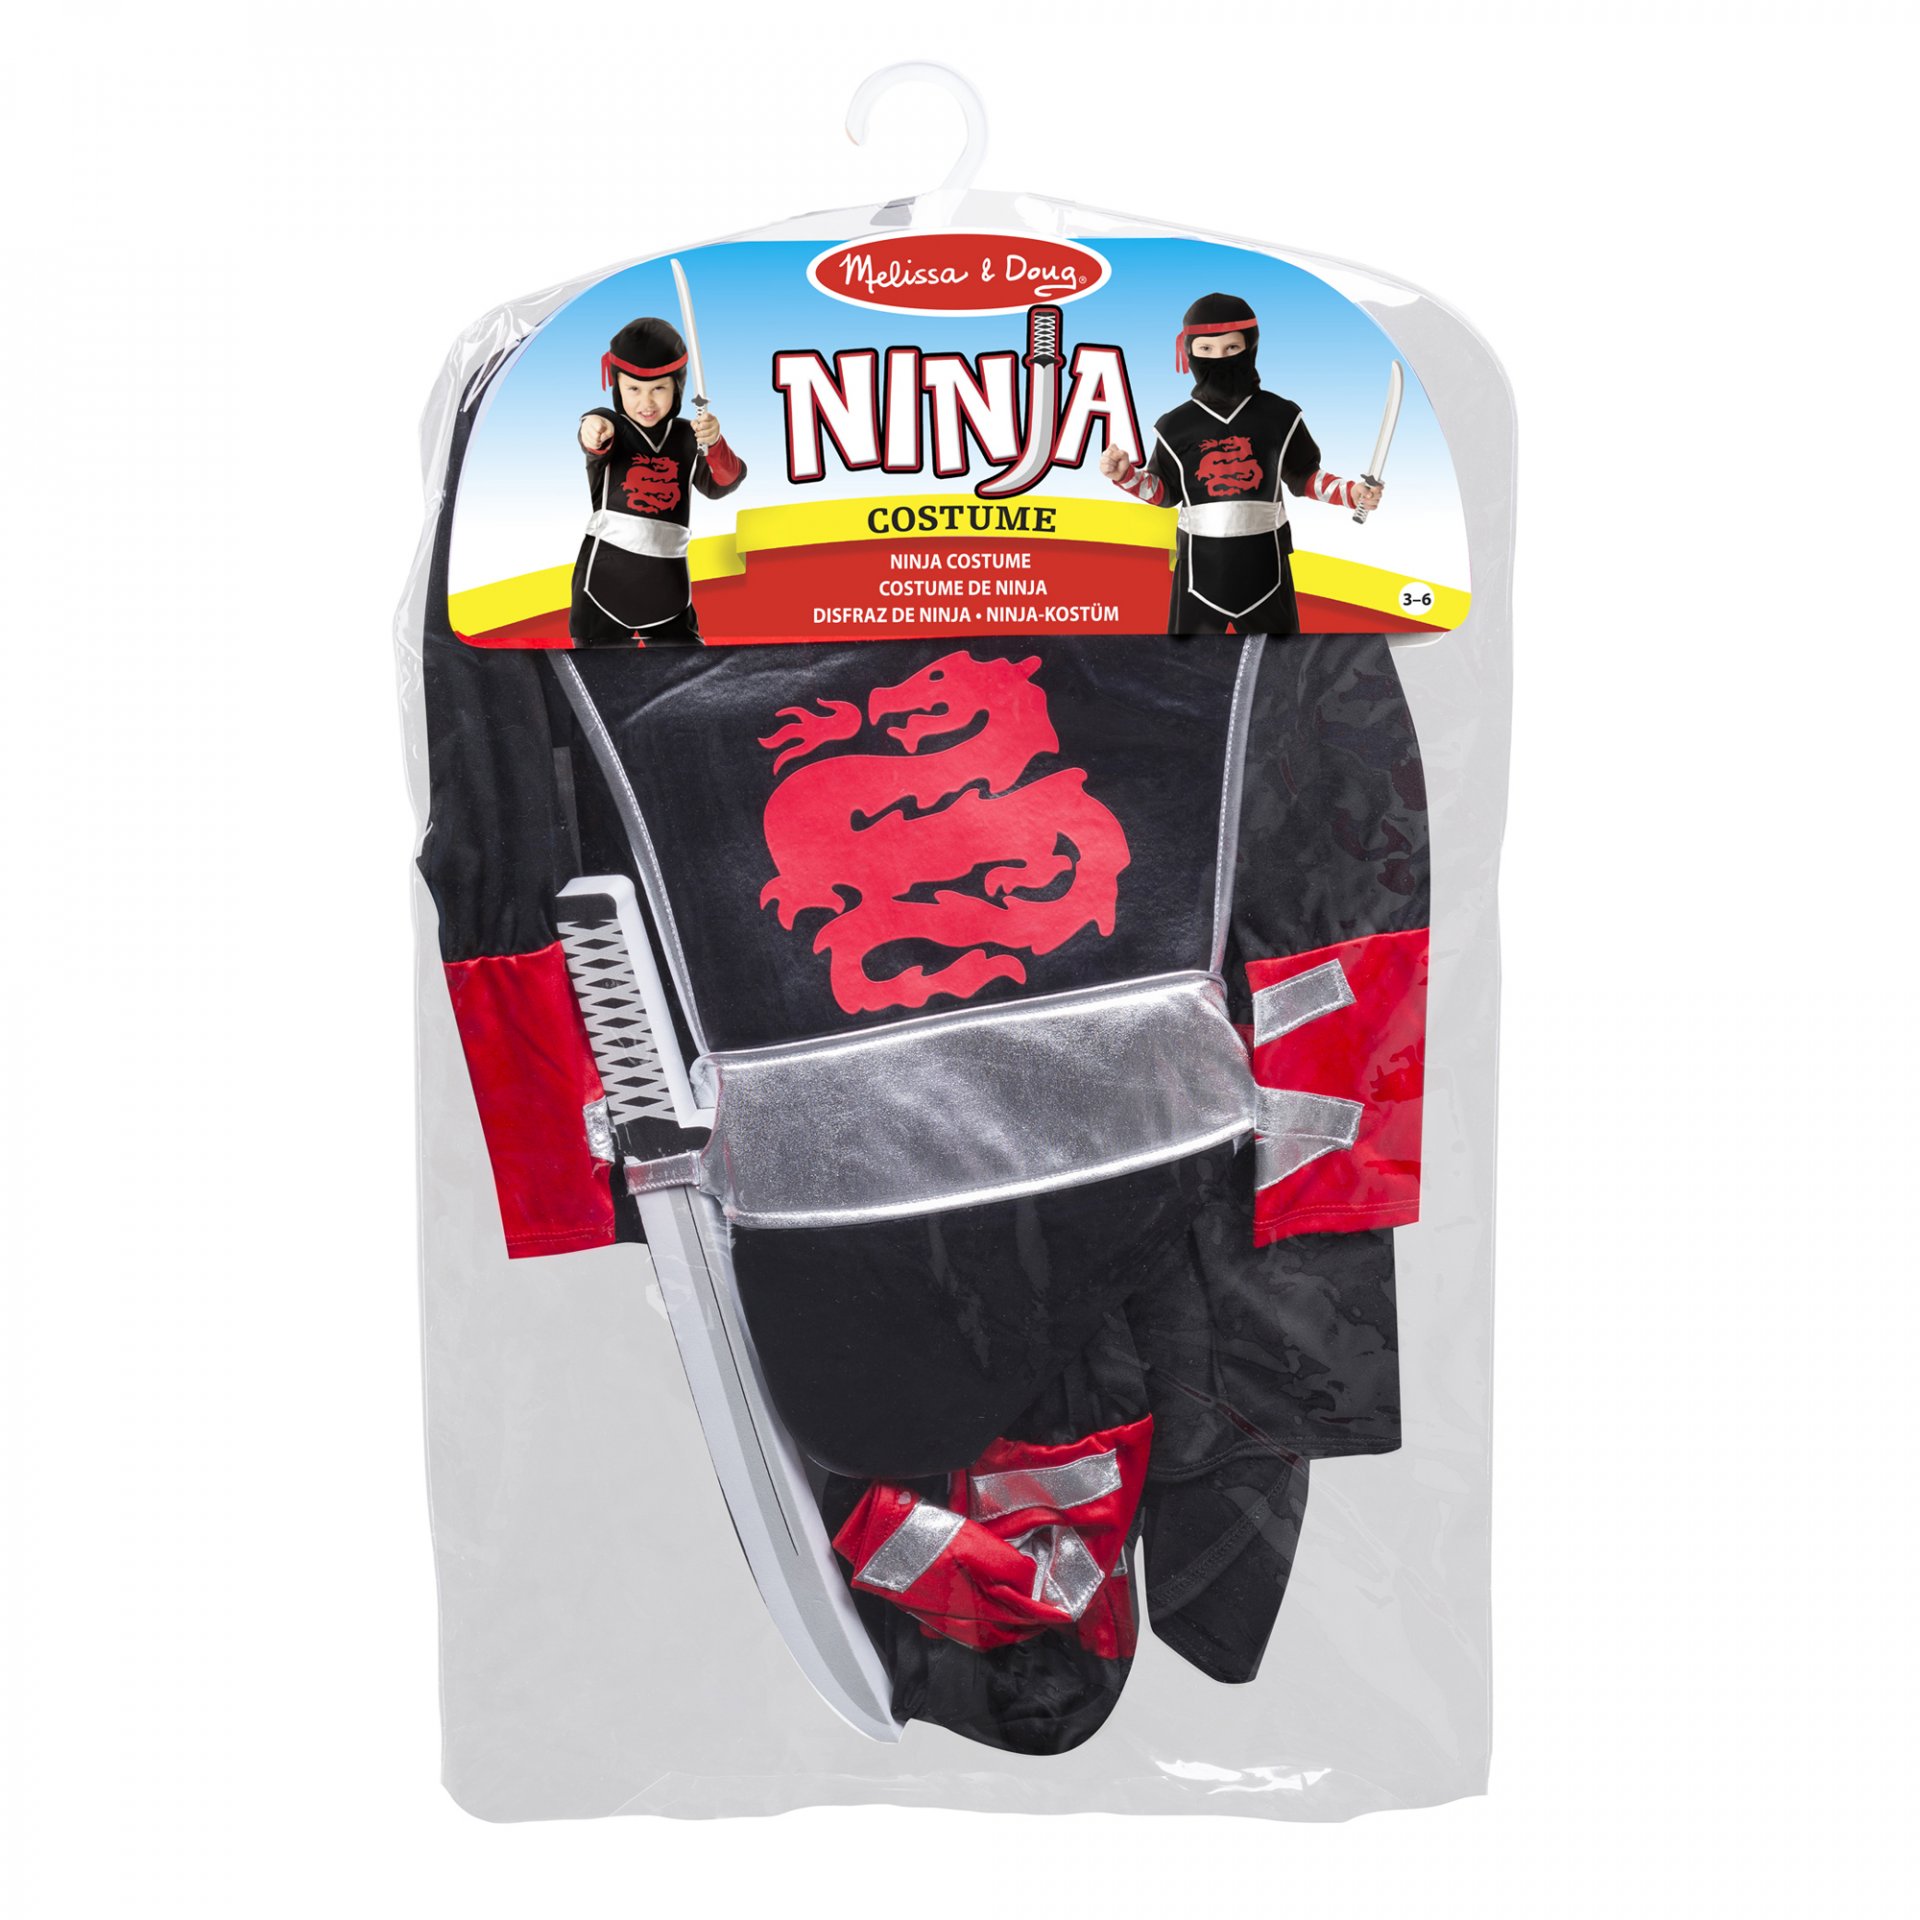 ชุดสวมบทบาท รุ่นนินจา Ninja Role Play Costume Set รุ่น 8542 ยี่ห้อ Melissa & Doug (นำเข้า USA)